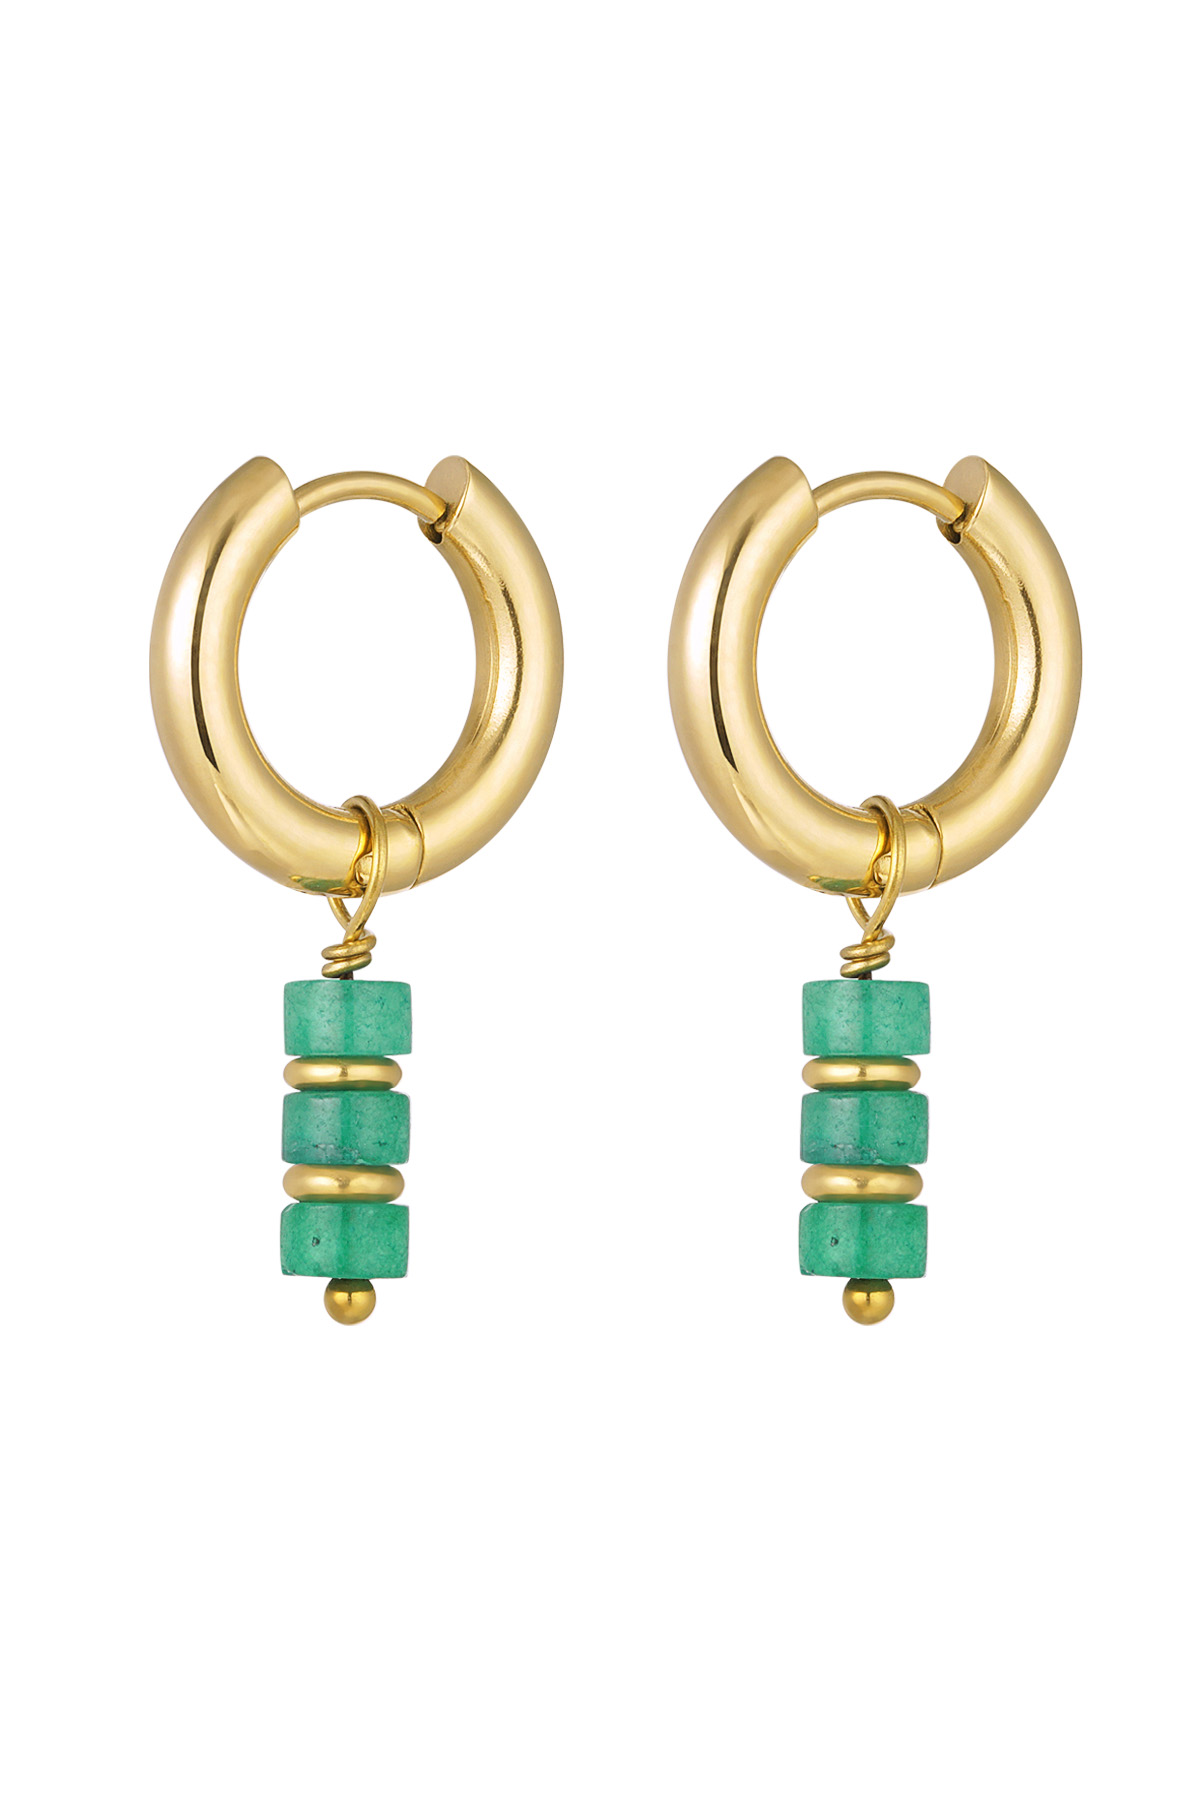 Boucles d'oreilles colorées - Collection #summergirls Acier inoxydable Vert & Doré h5 